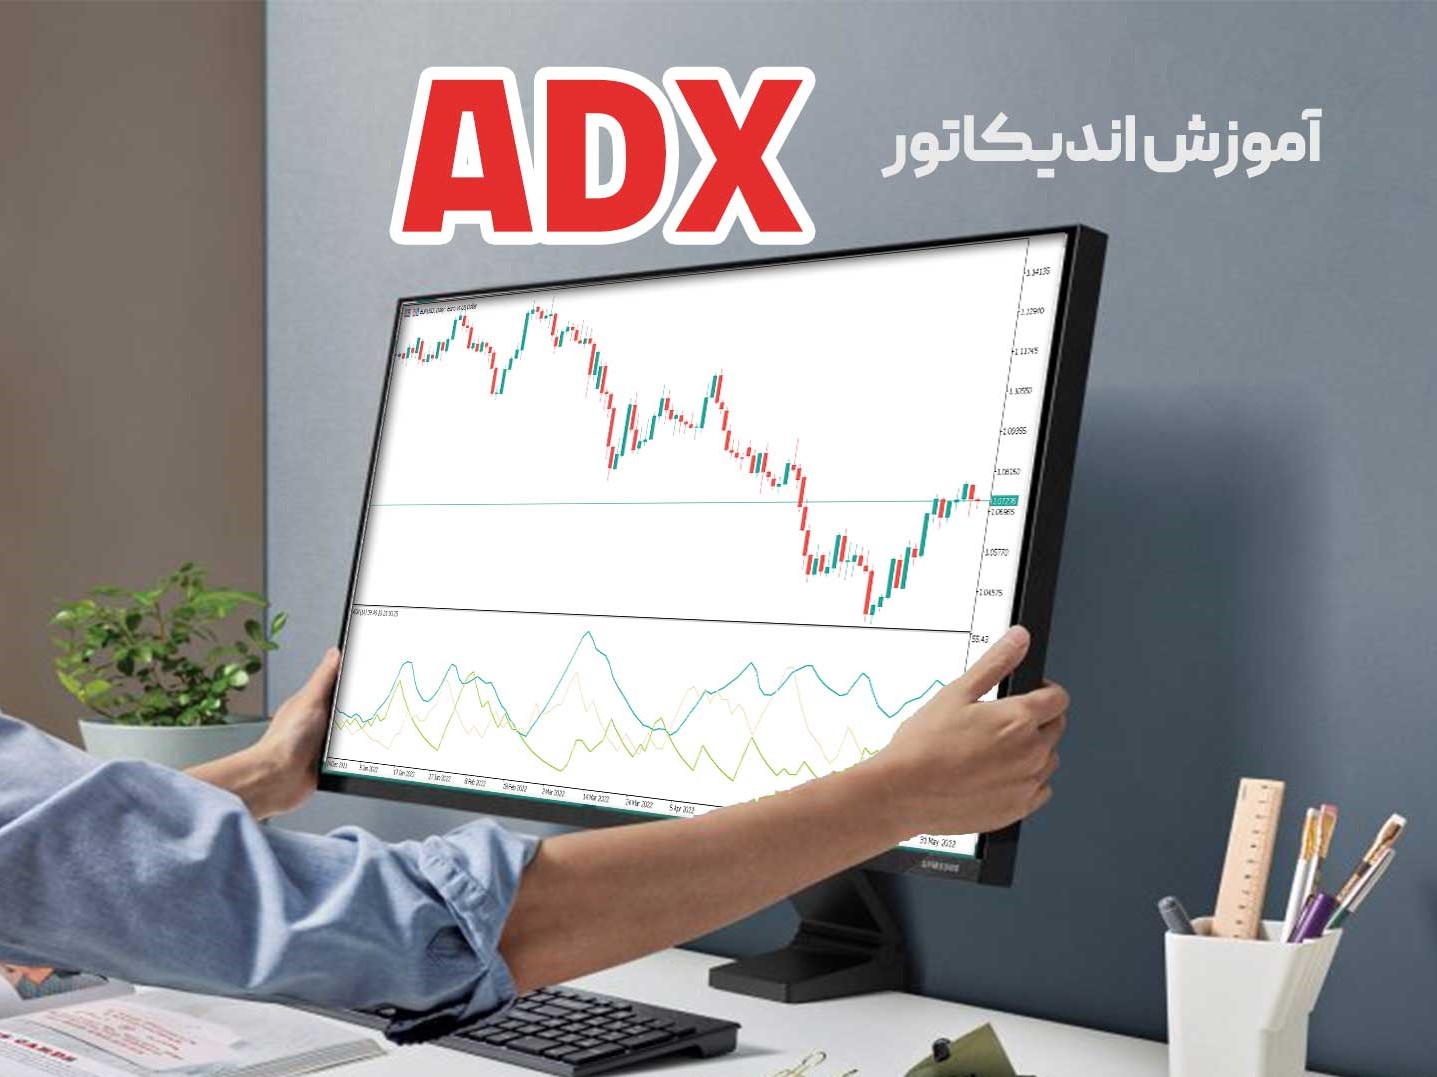 اندیکاتور adx چیست؟ آموزش جامع، فرمول و بررسی ویدئویی adx 